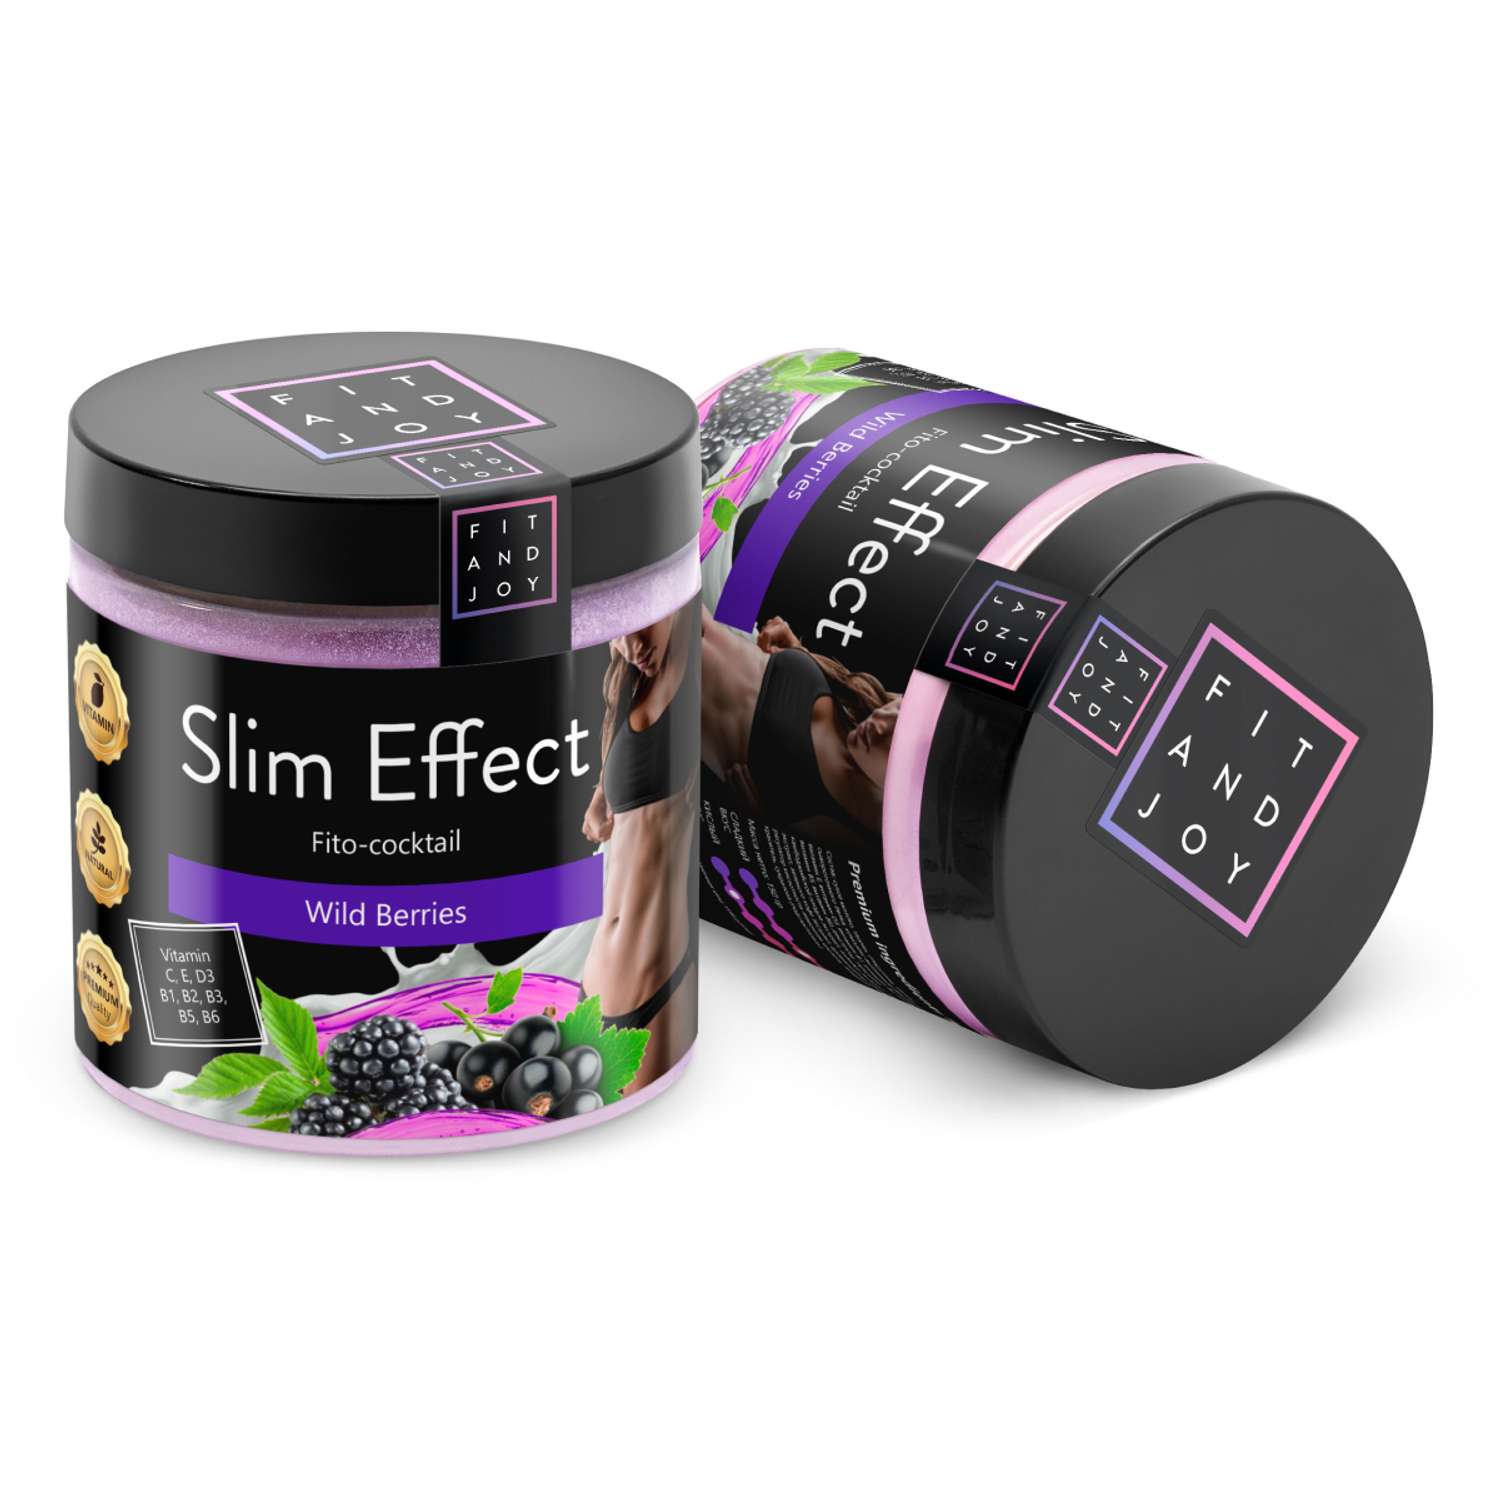 Фитококтейль FIT AND JOY Slim Effect Лесные ягоды для снижения веса 90 г - фото 9